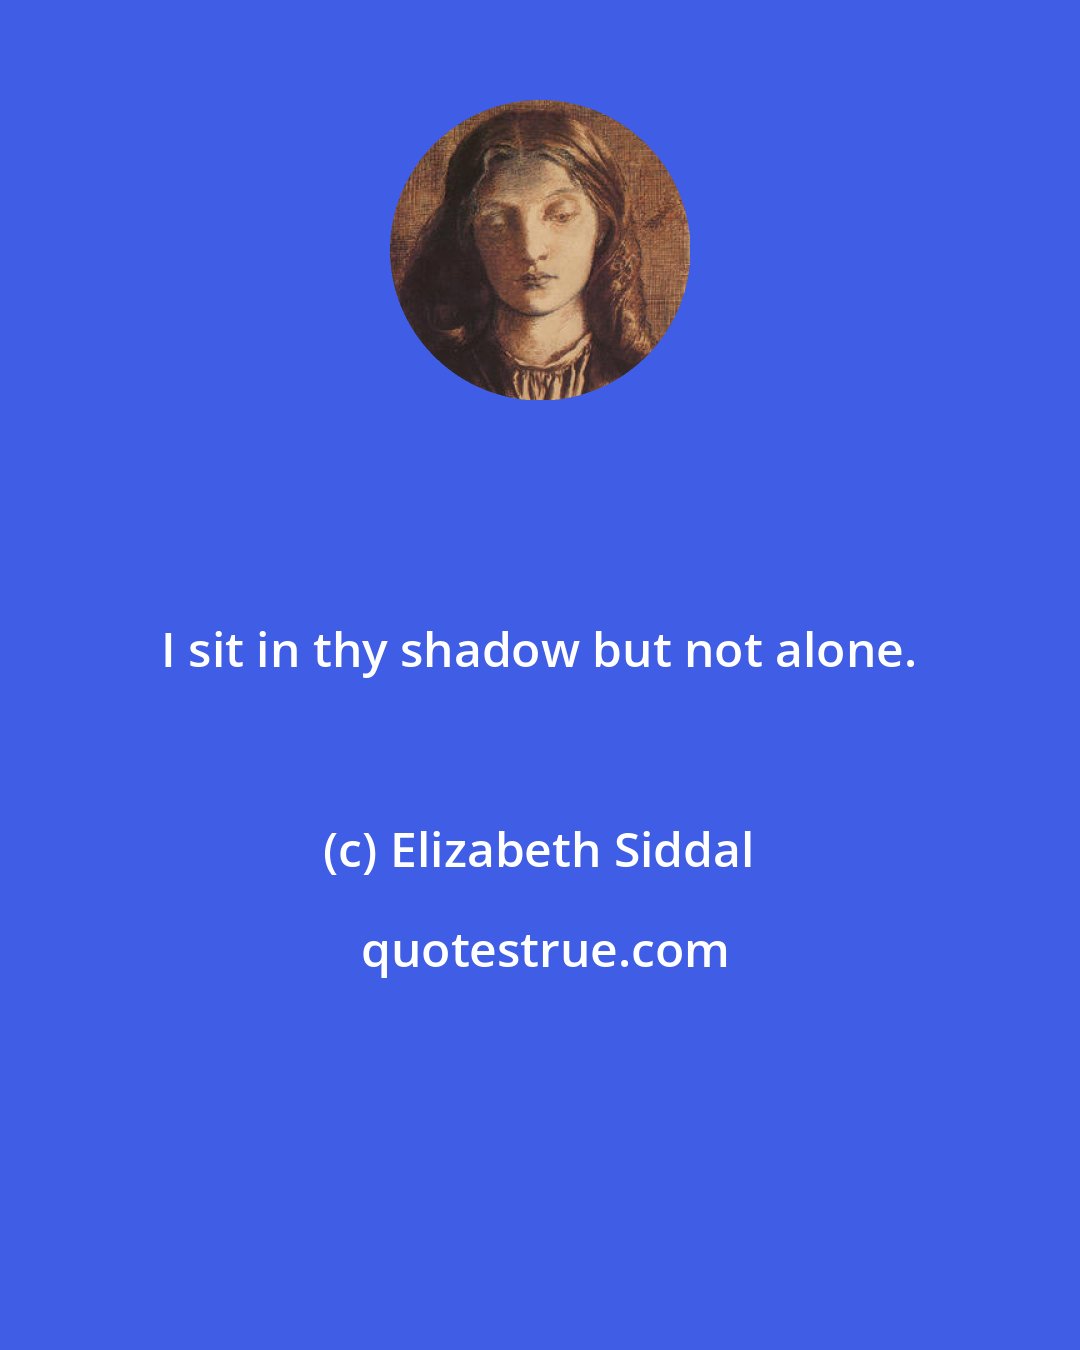 Elizabeth Siddal: I sit in thy shadow but not alone.